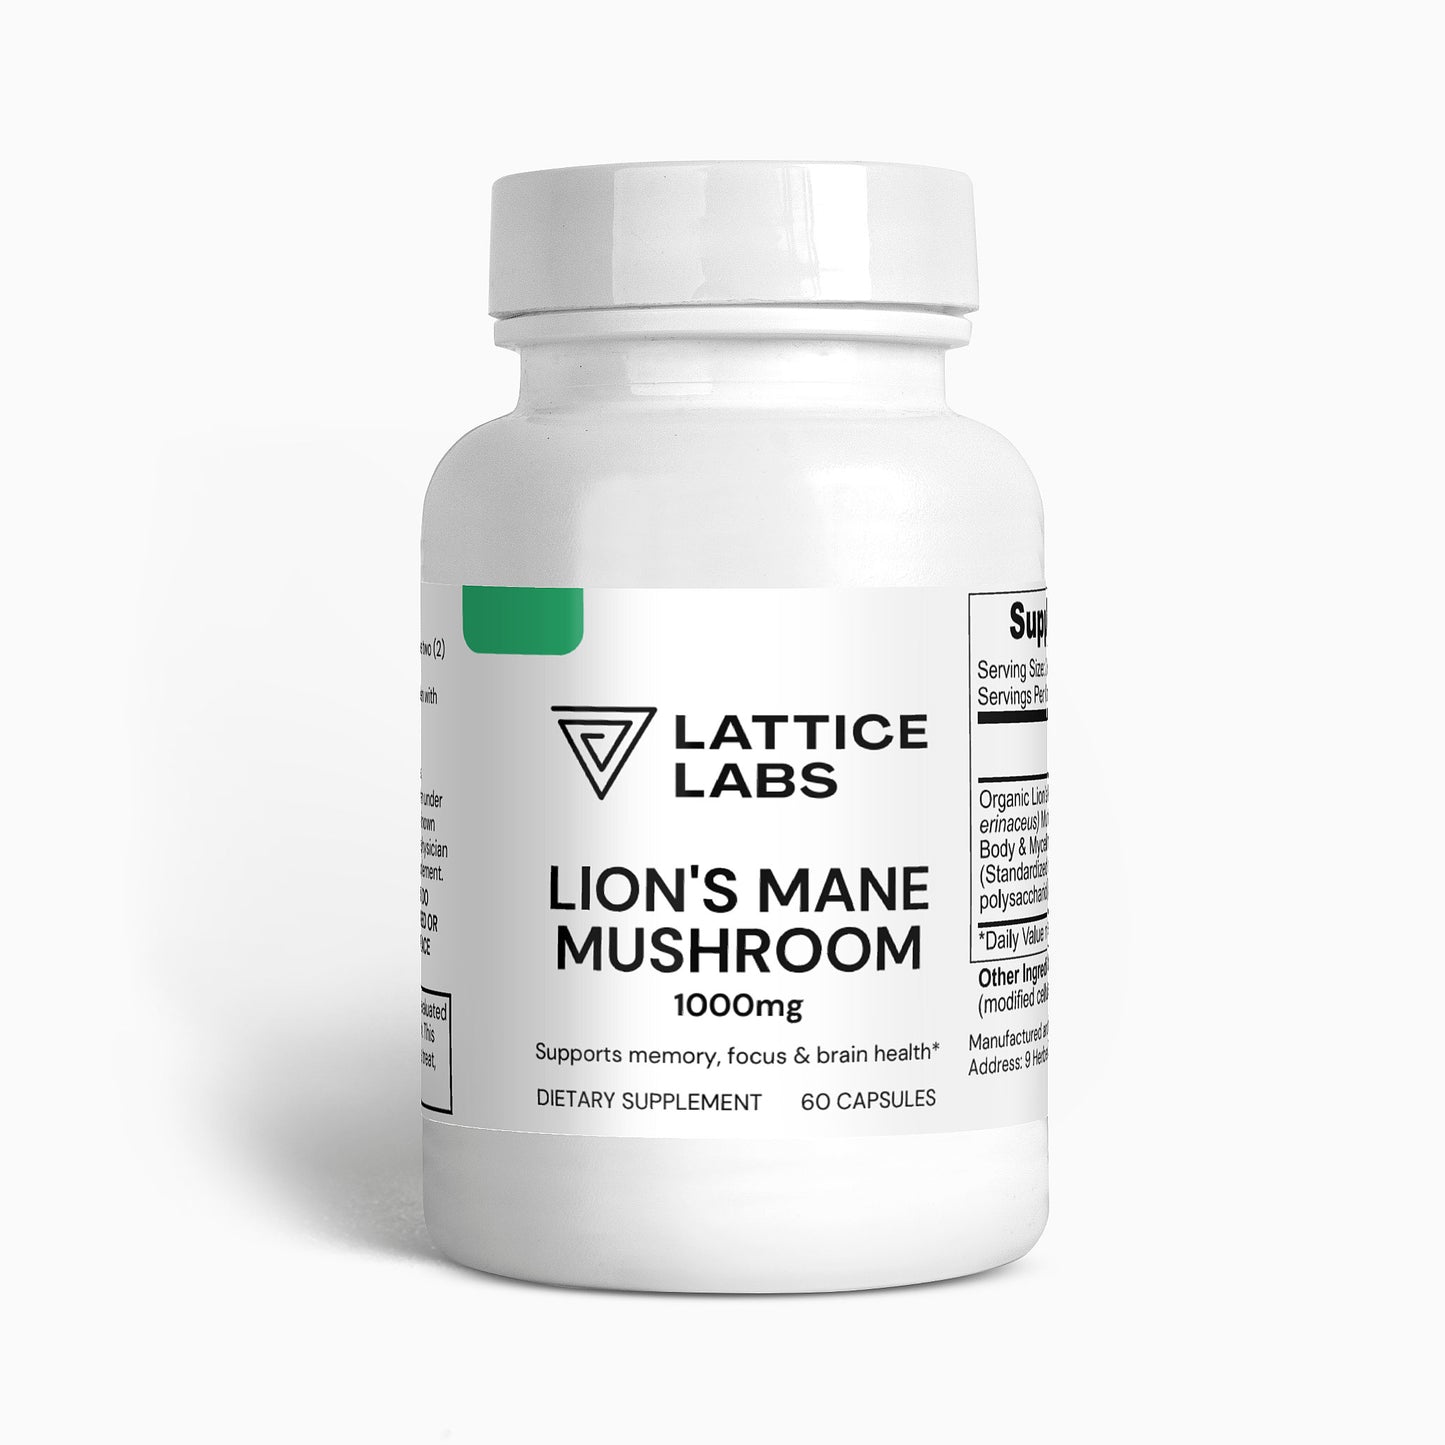 Lattice Labs Lion's Mane Mushroom